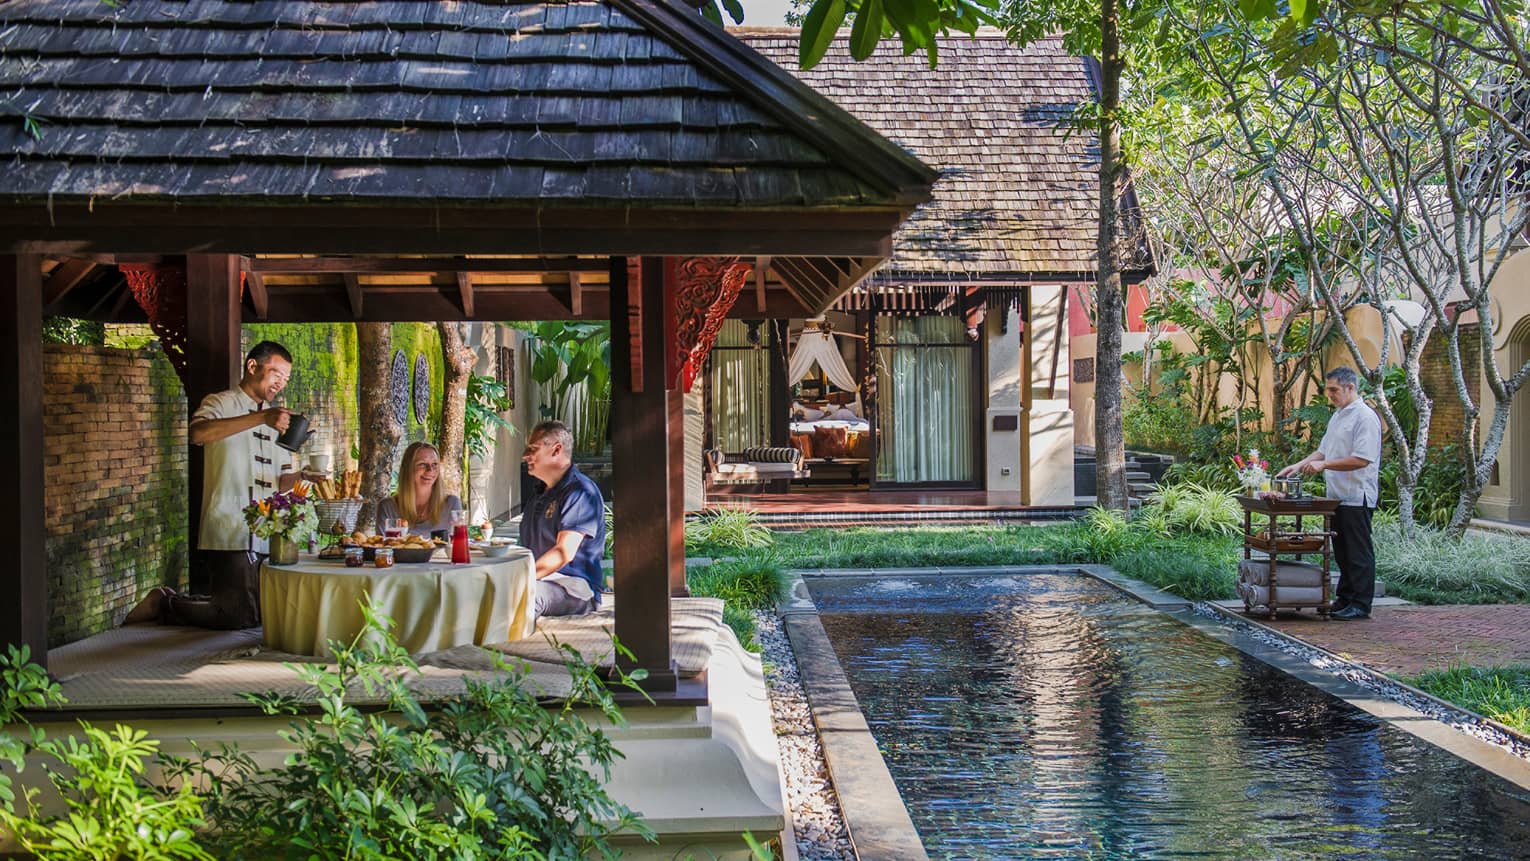 Hotel staff serve couple under dining gazebo by pond 